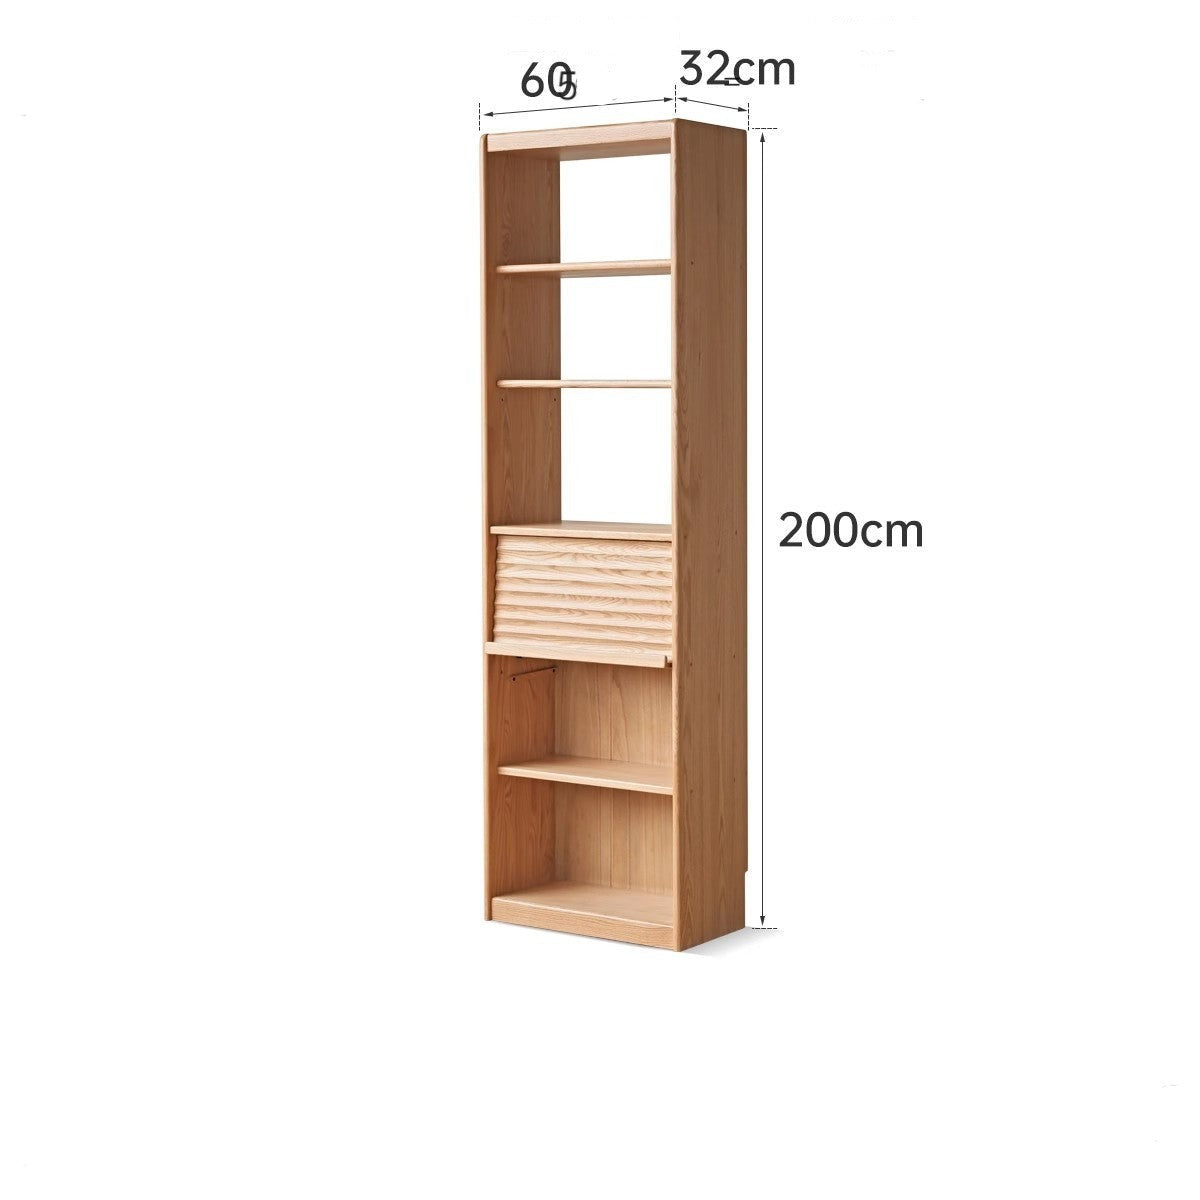 Oak solid wood bookcase with glass door floor-standing bookshelf multi-layer storage rack free combination display cabinet"